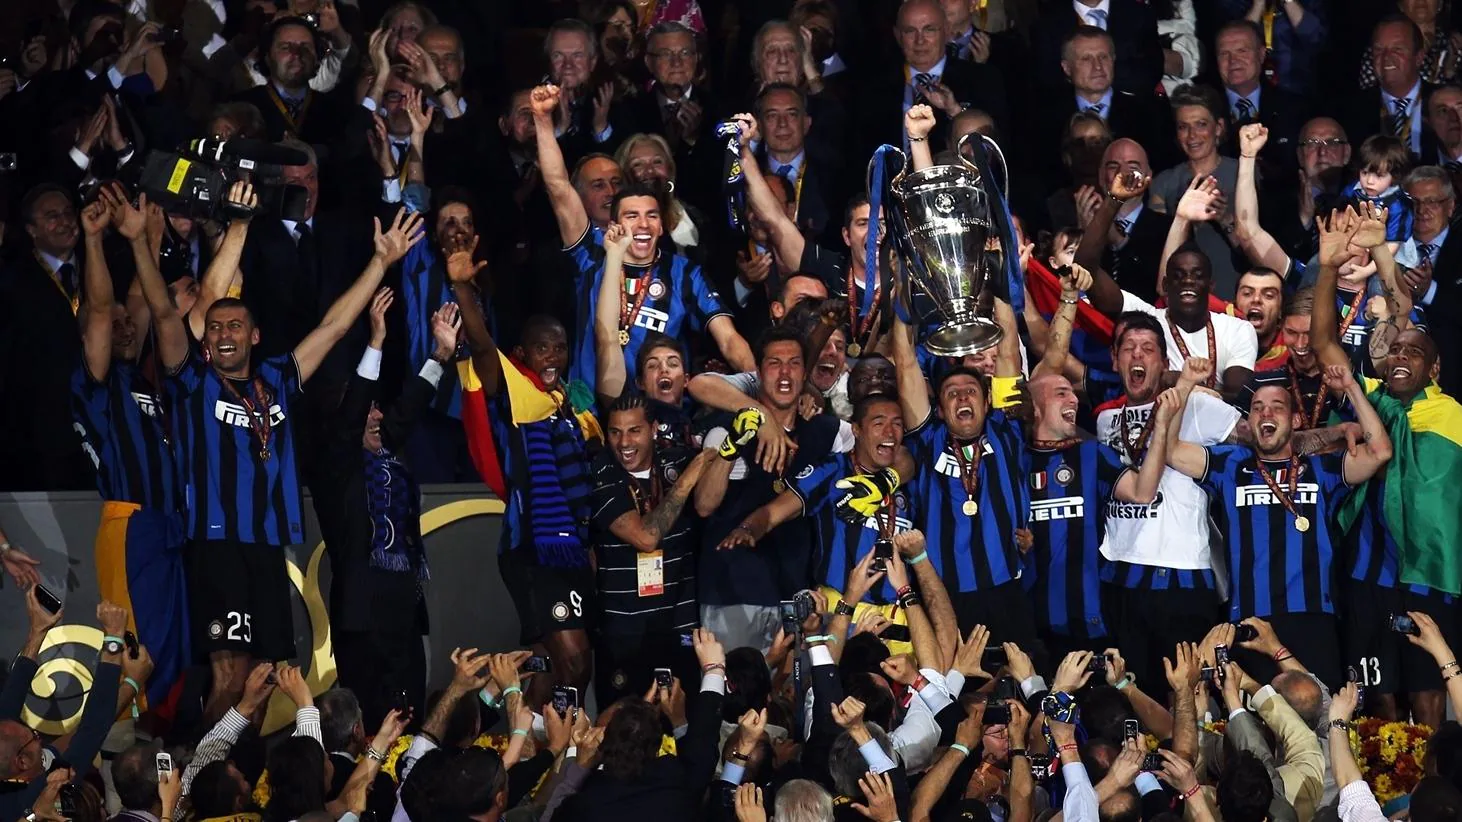 Inter Milan won the UCL in 2009/10 season